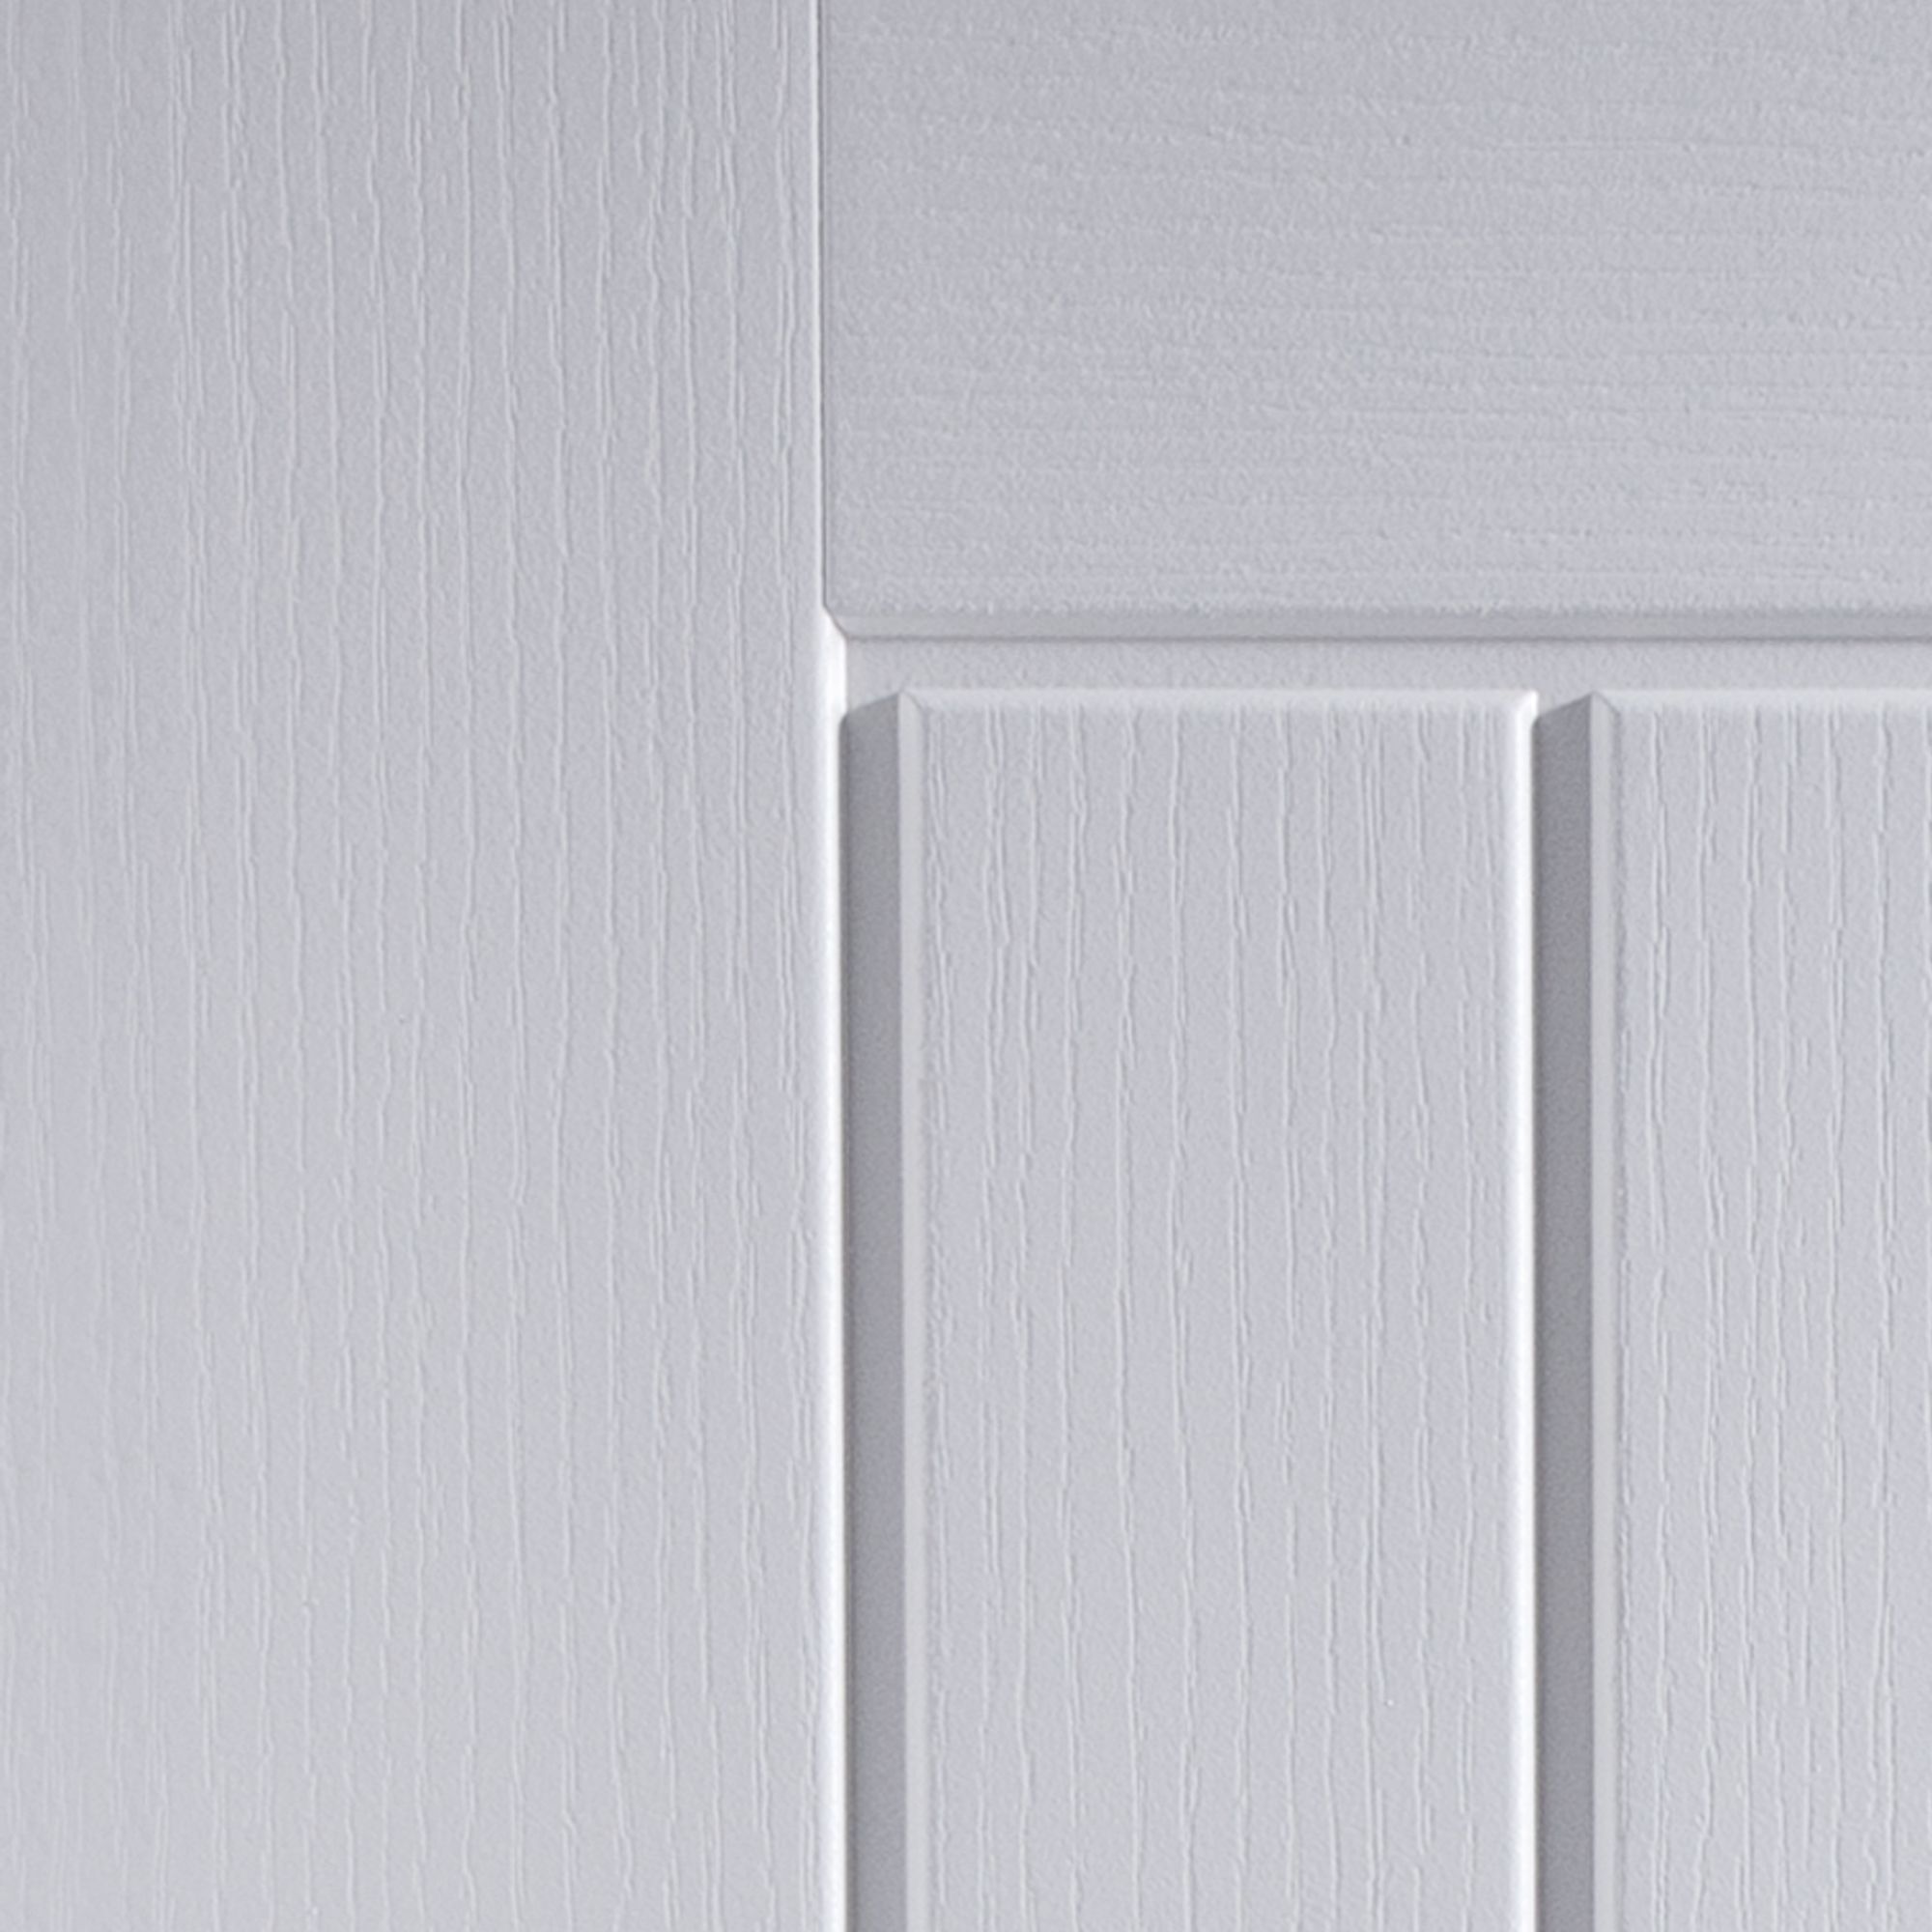 Cottage Unglazed Cottage White Woodgrain effect Internal Door, (H)1981mm (W)686mm (T)35mm